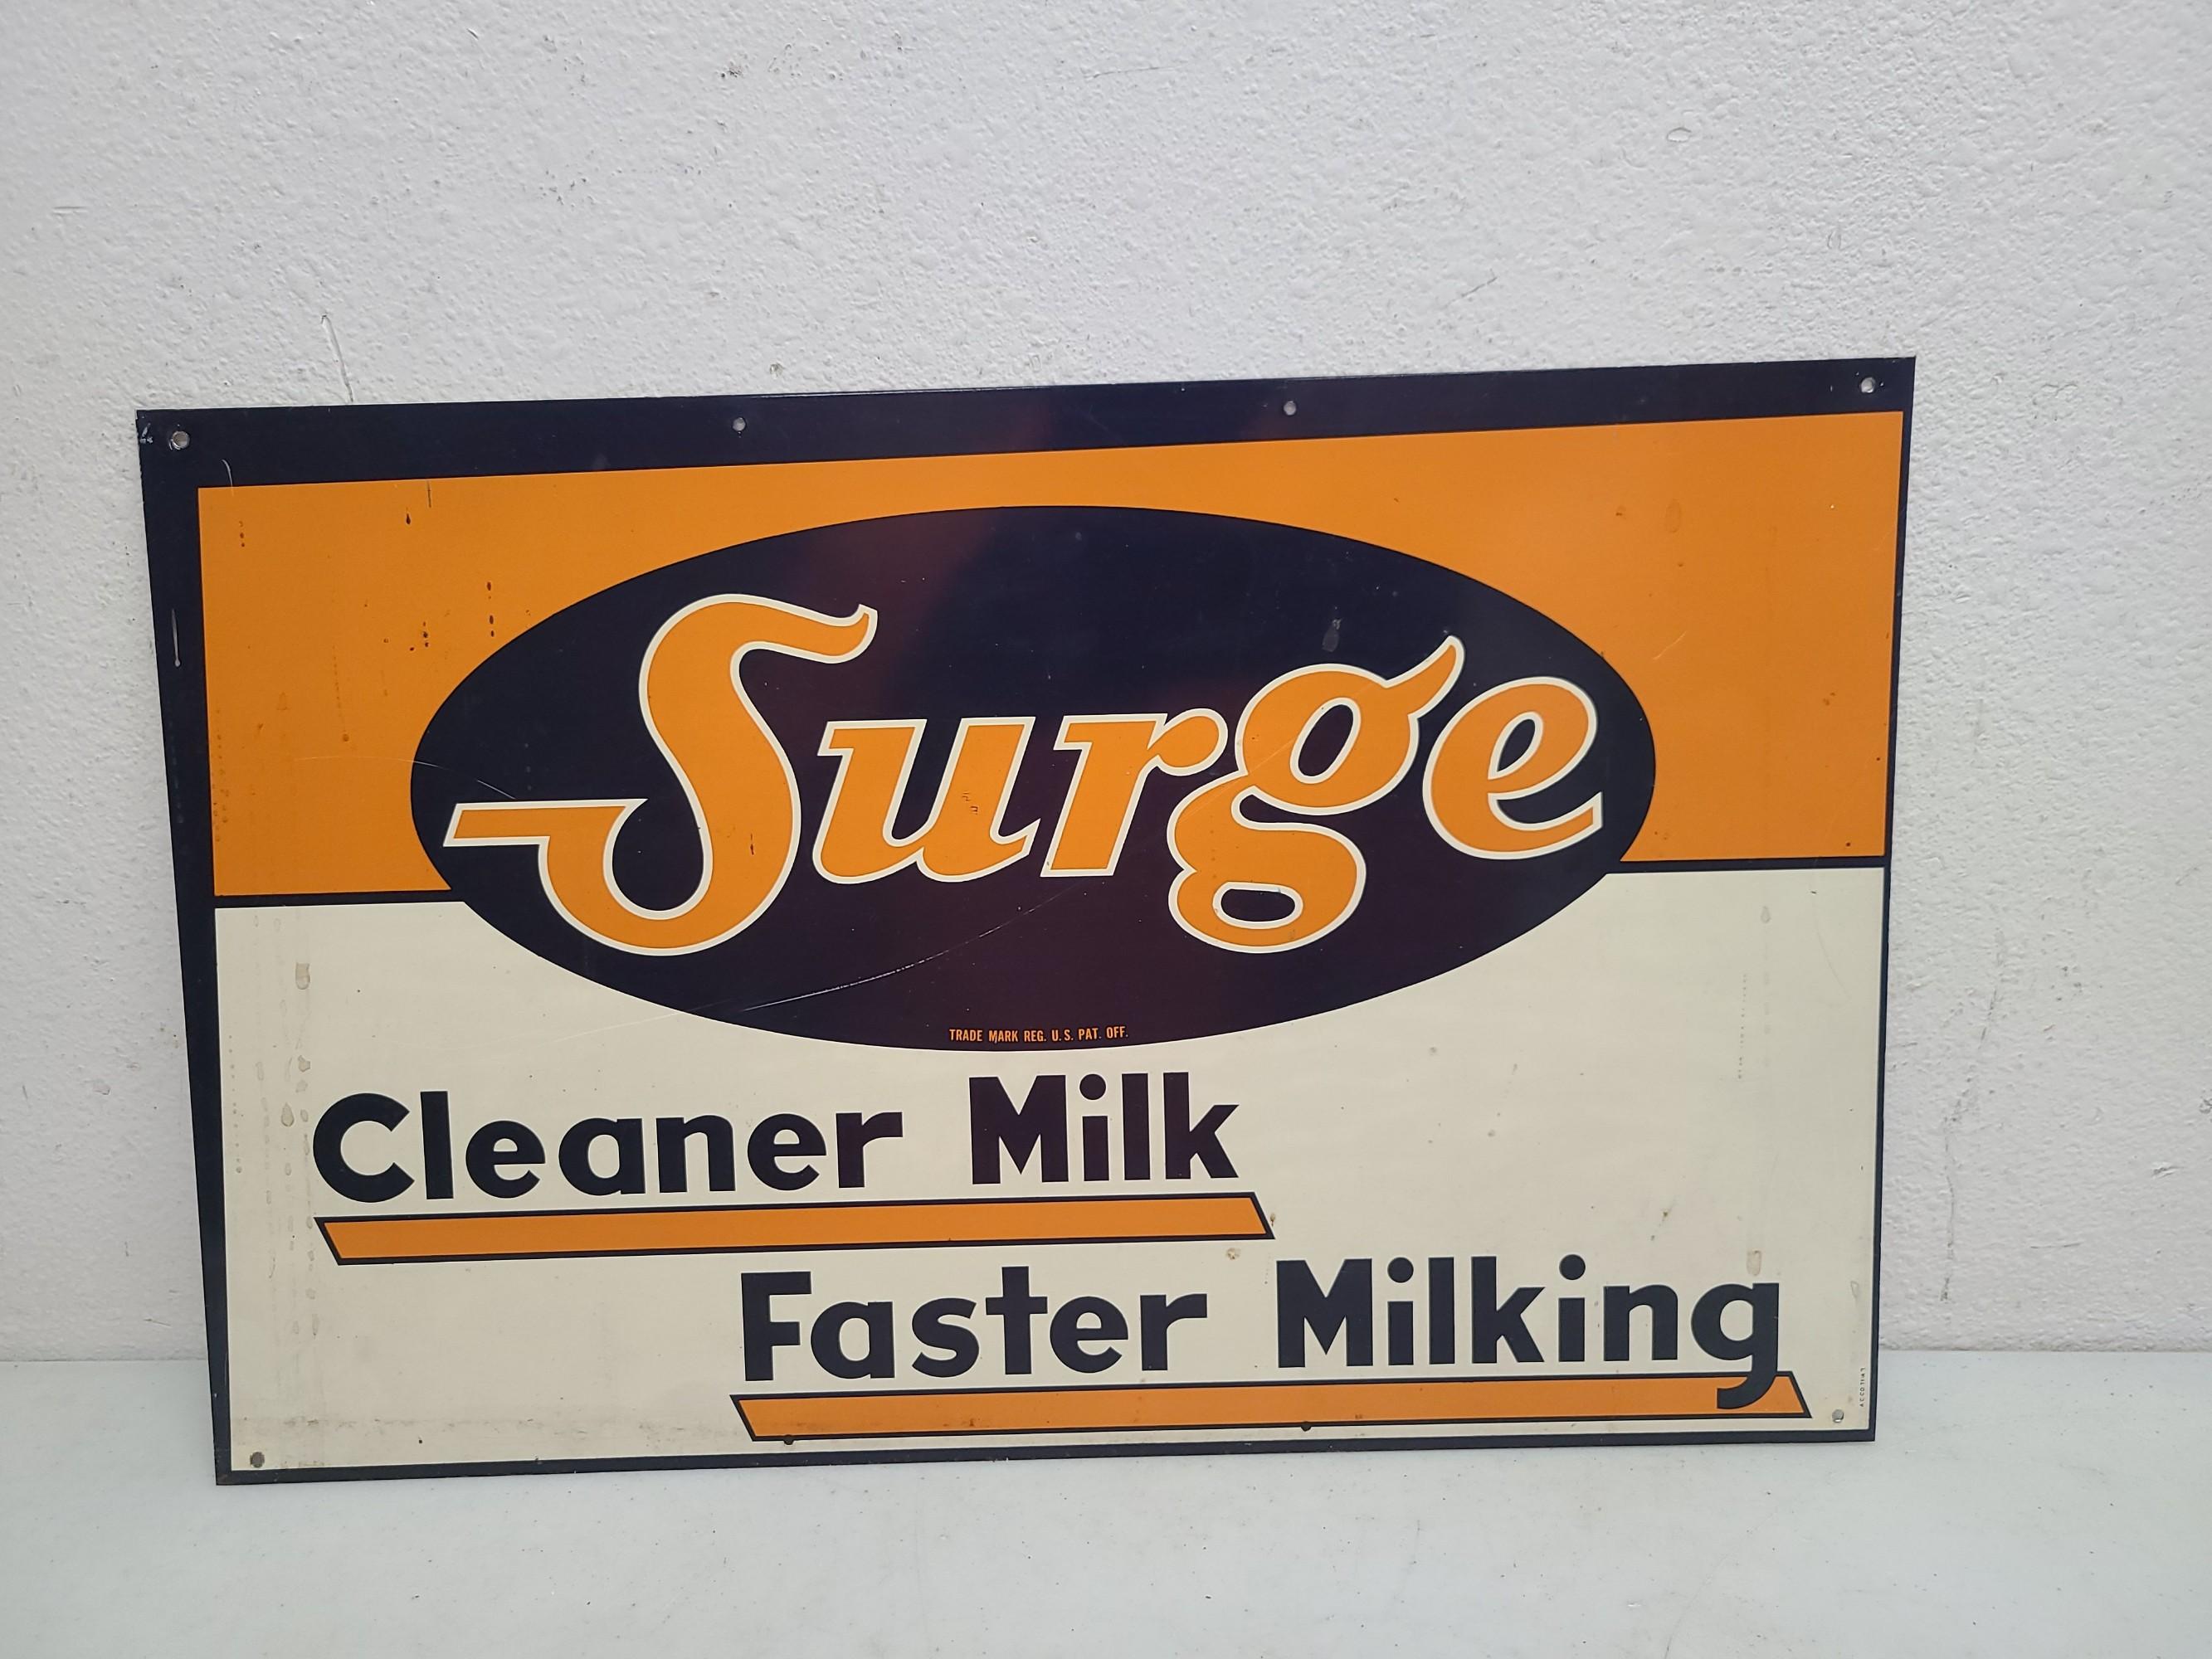 SST, SURGE Cleaner Milk Sign